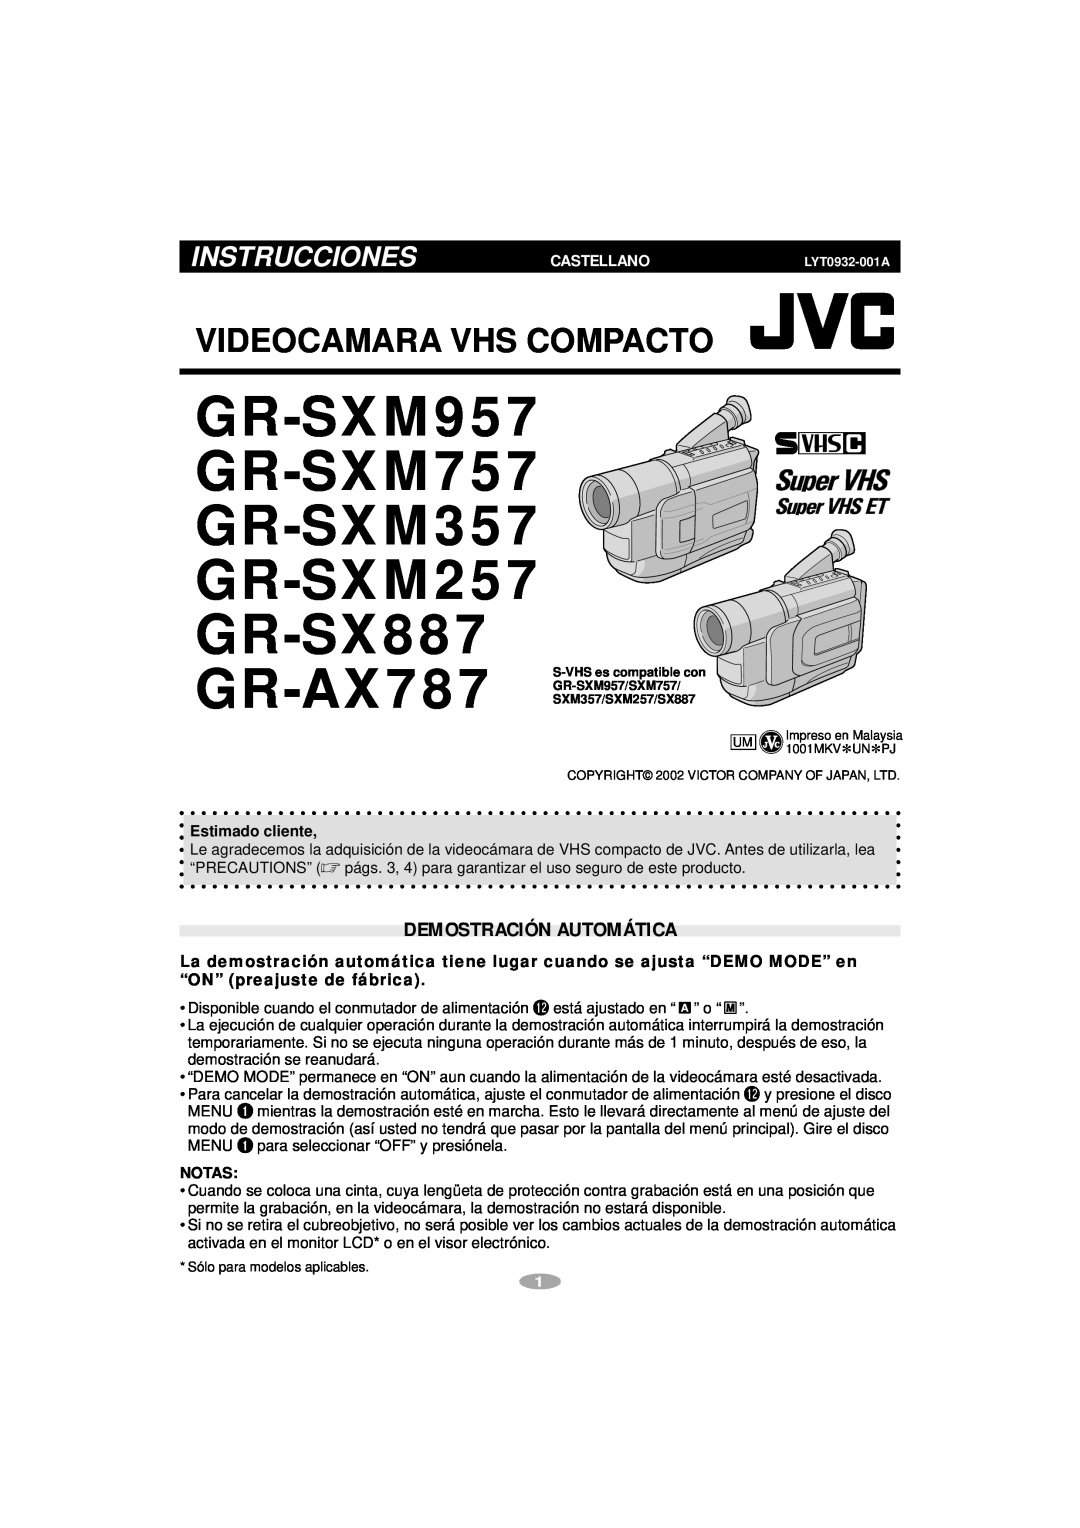 JVC GR-SX887, GR-AX787, GR-SXM357 manual Videocamara Vhs Compacto, Instrucciones, Demostración Automática, Castellano 